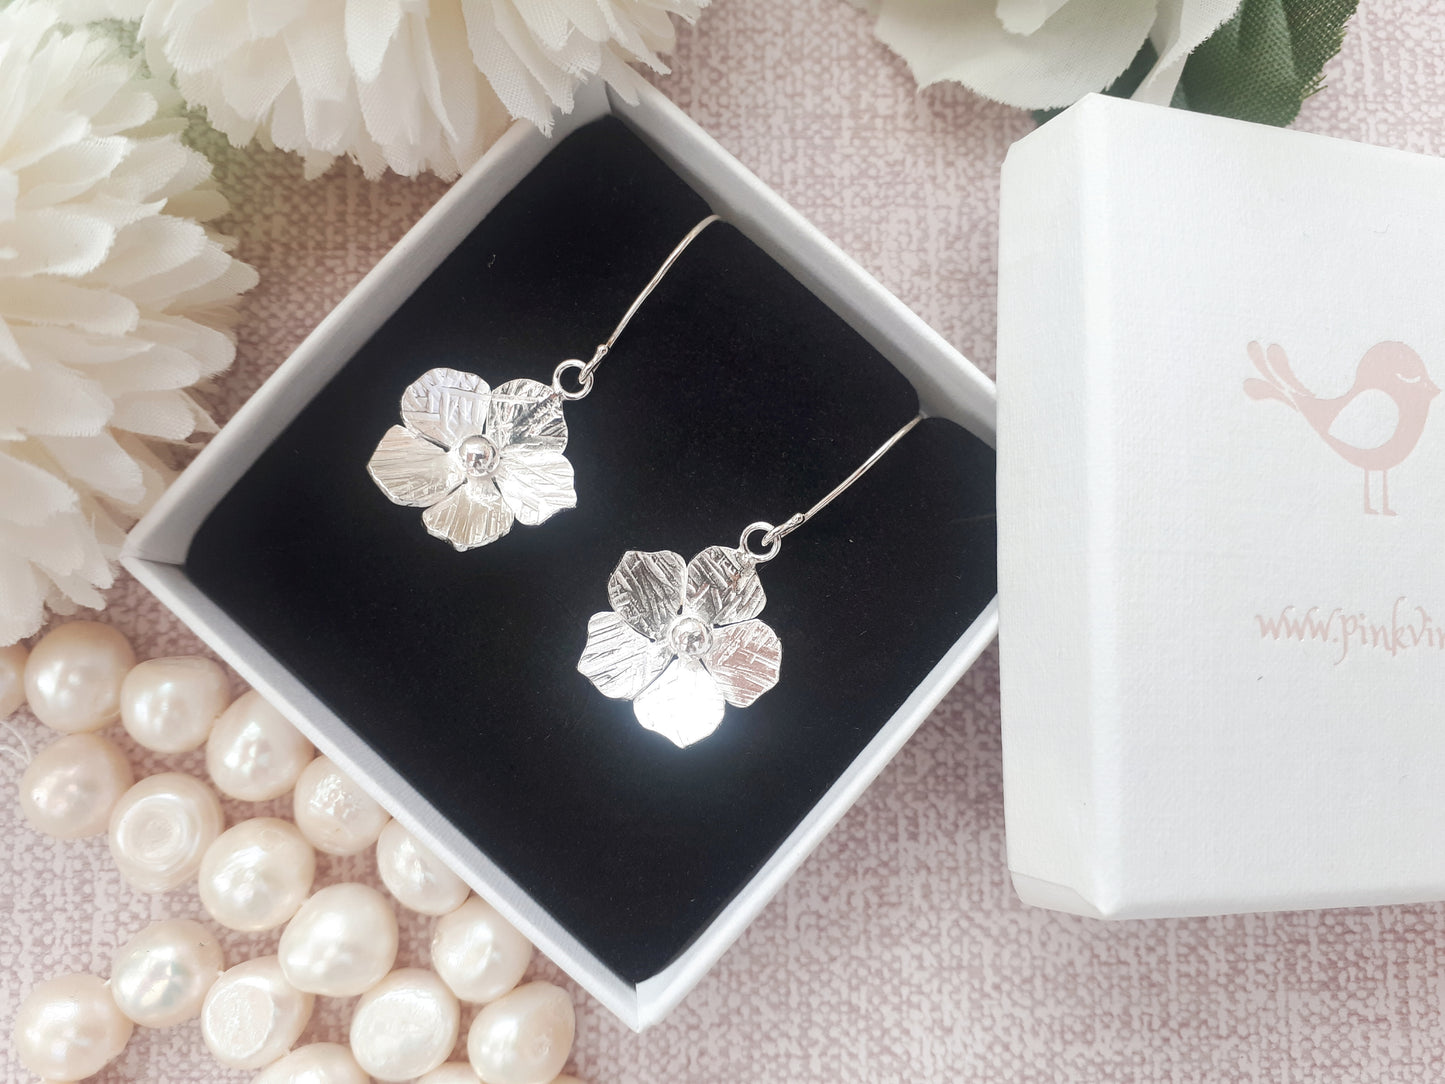 Flower drop earrings in sterling silver.